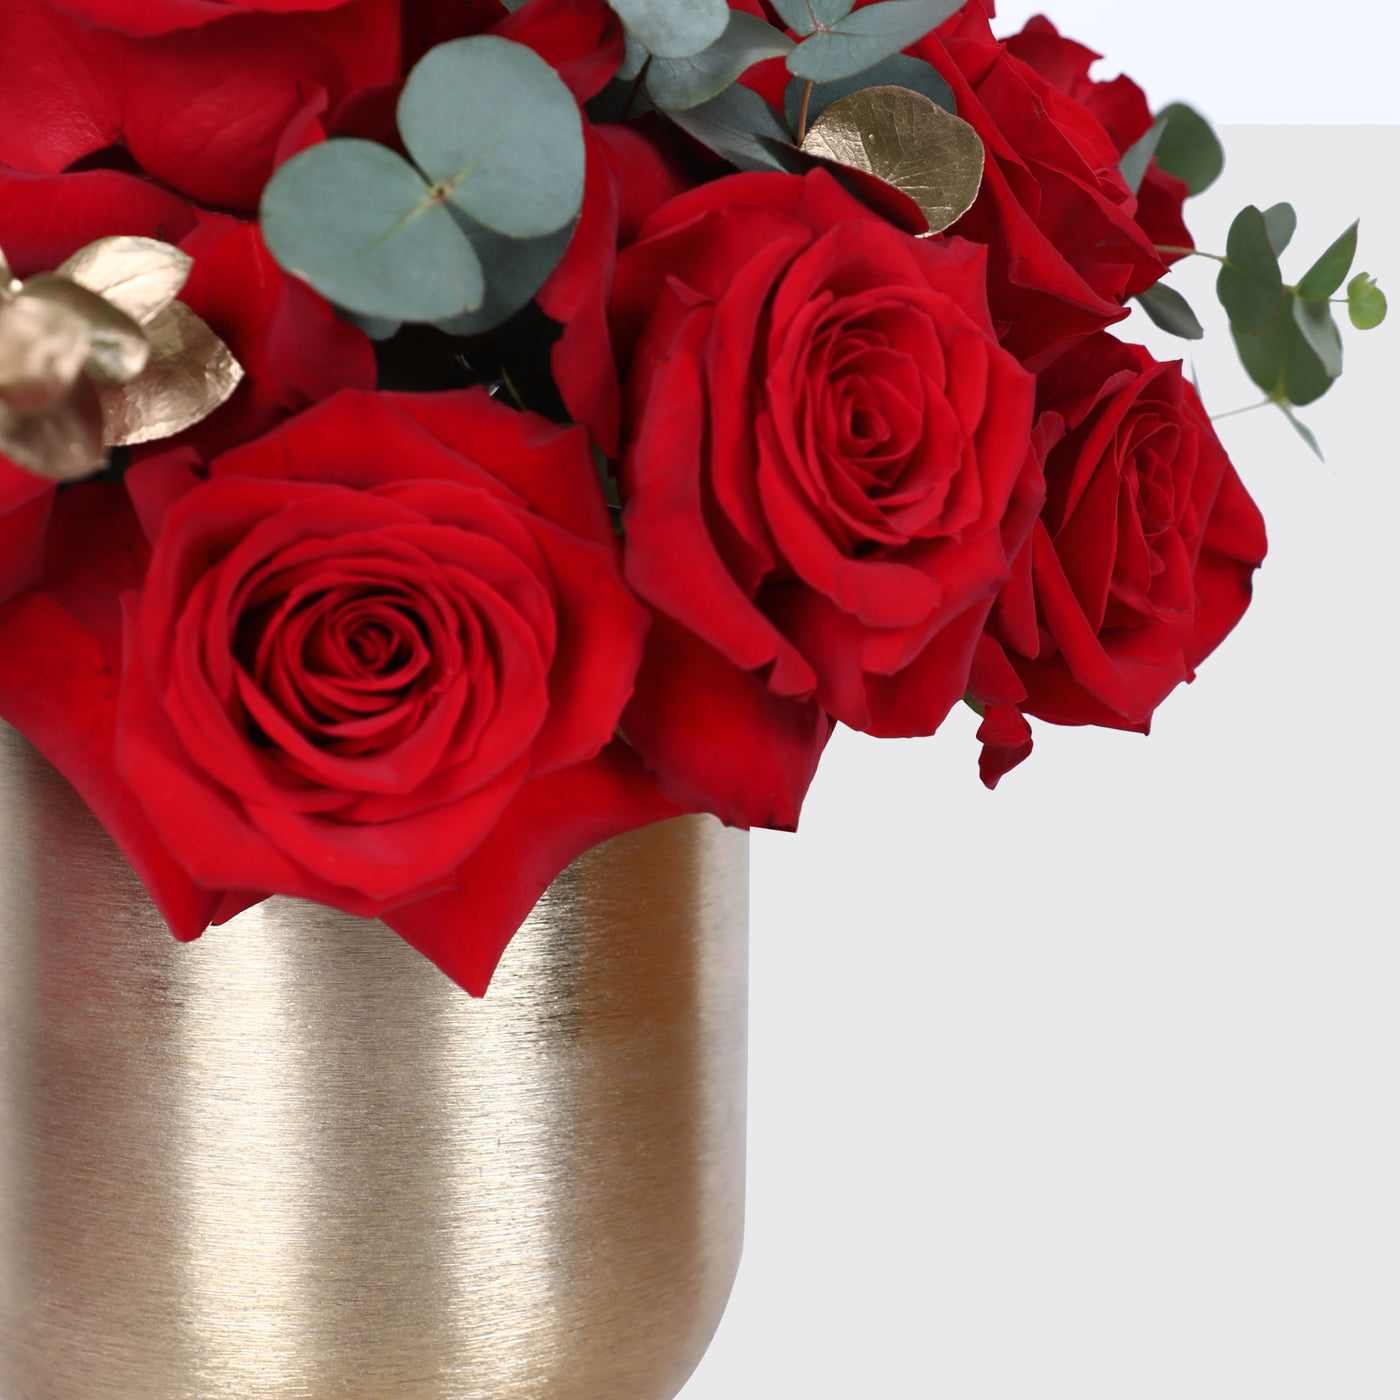 Rosy Affection in Vase